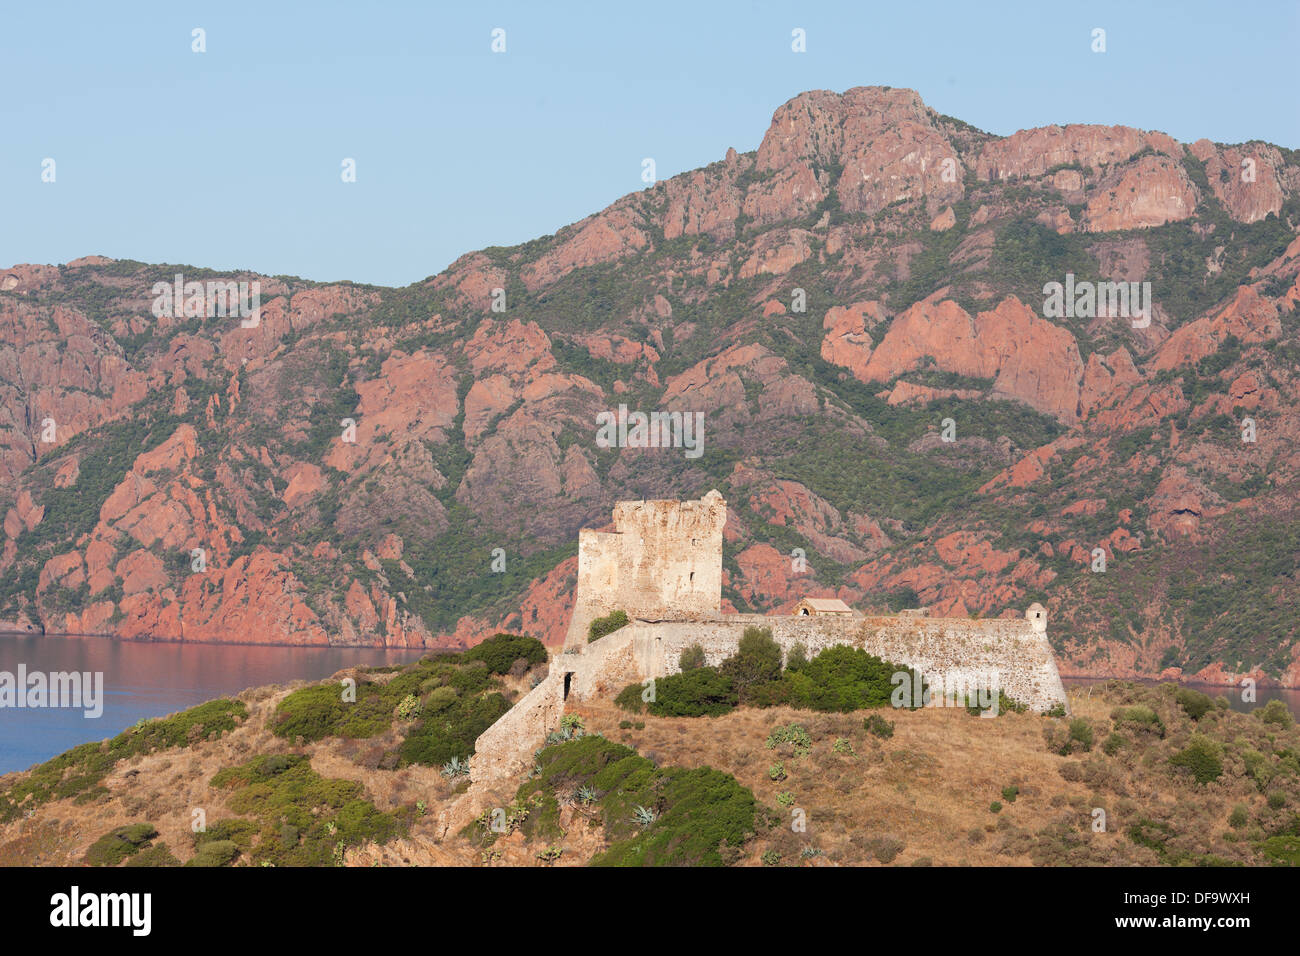 Tour génoise surplombant le golfe de Girolata, avec l'immense falaise de roche volcanique rouge de Scandola en arrière-plan.Osani, Corse, France. Banque D'Images